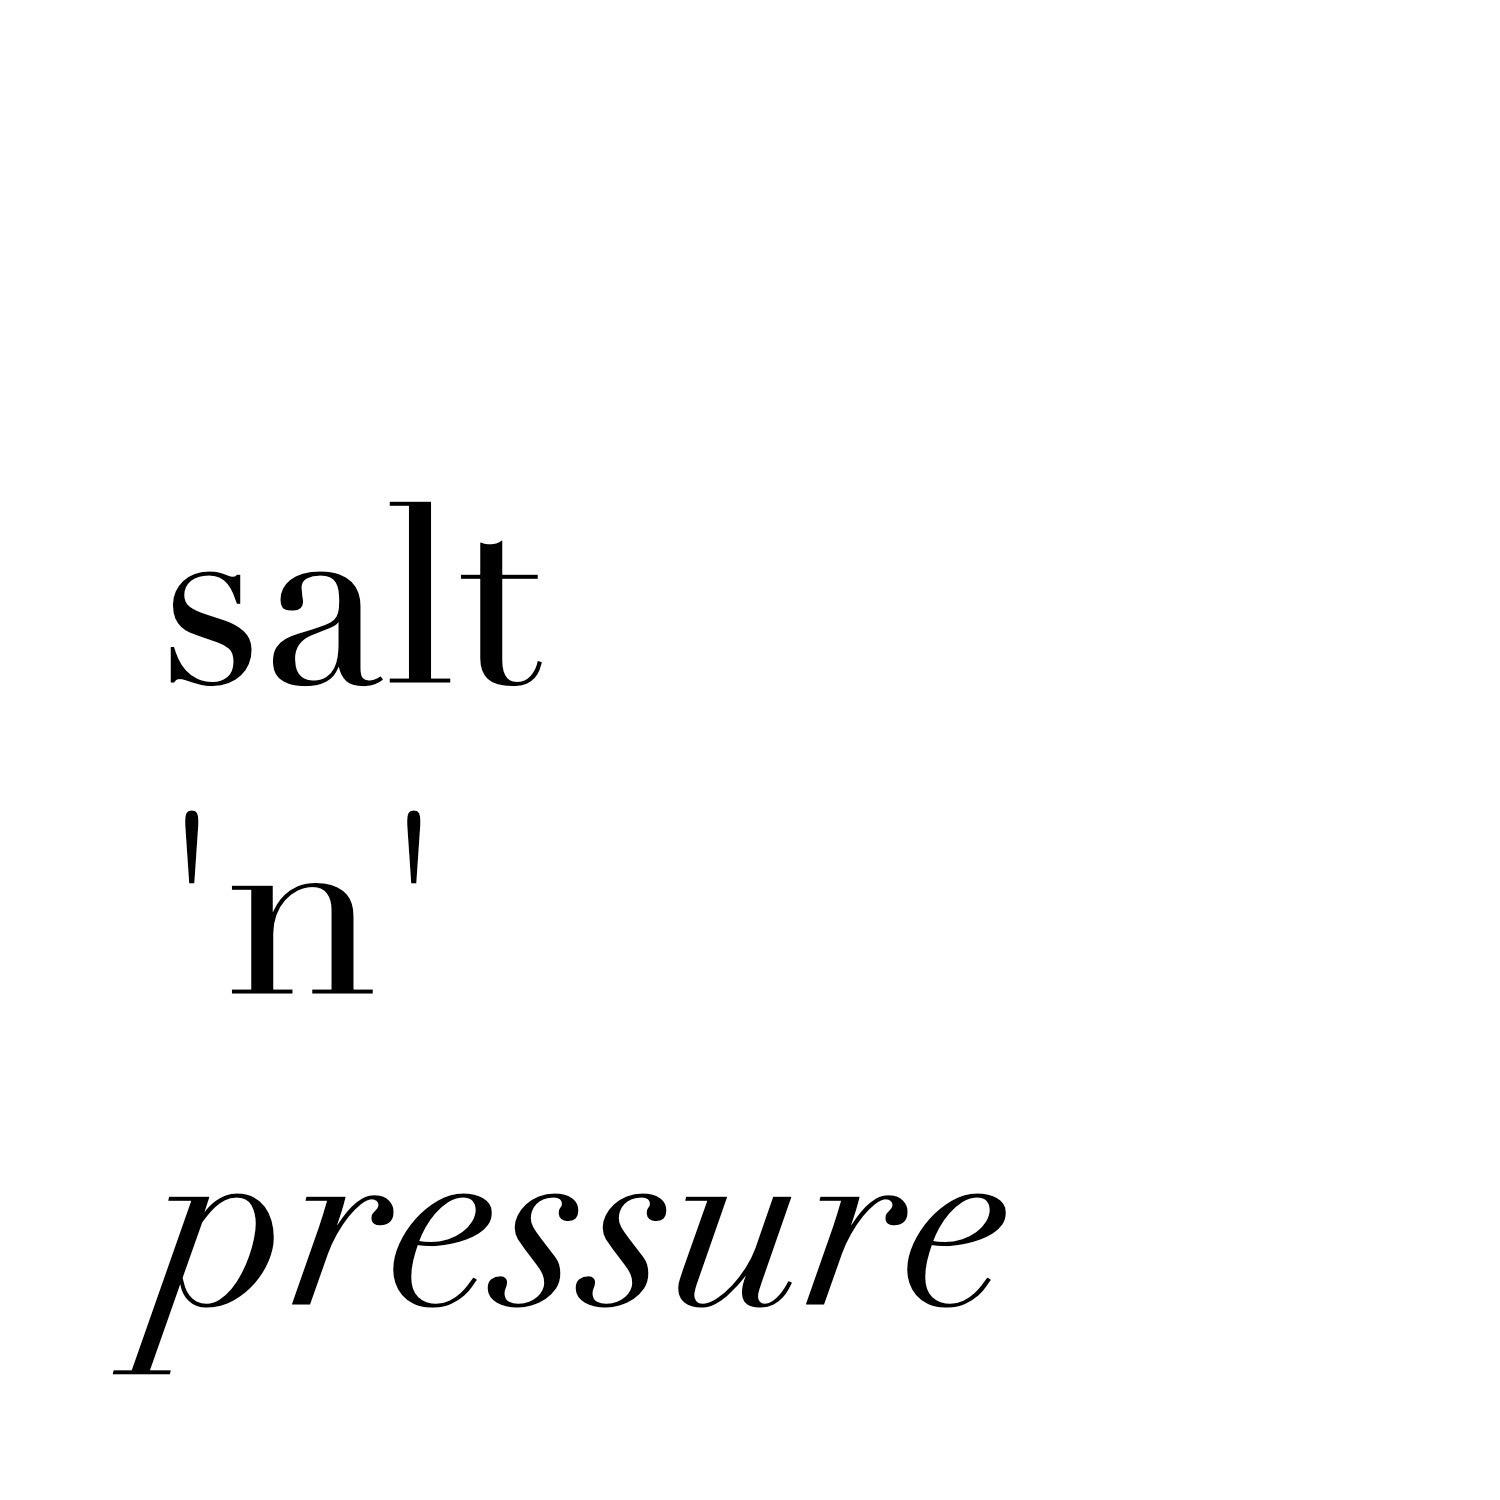 Salt 'n' Pressure